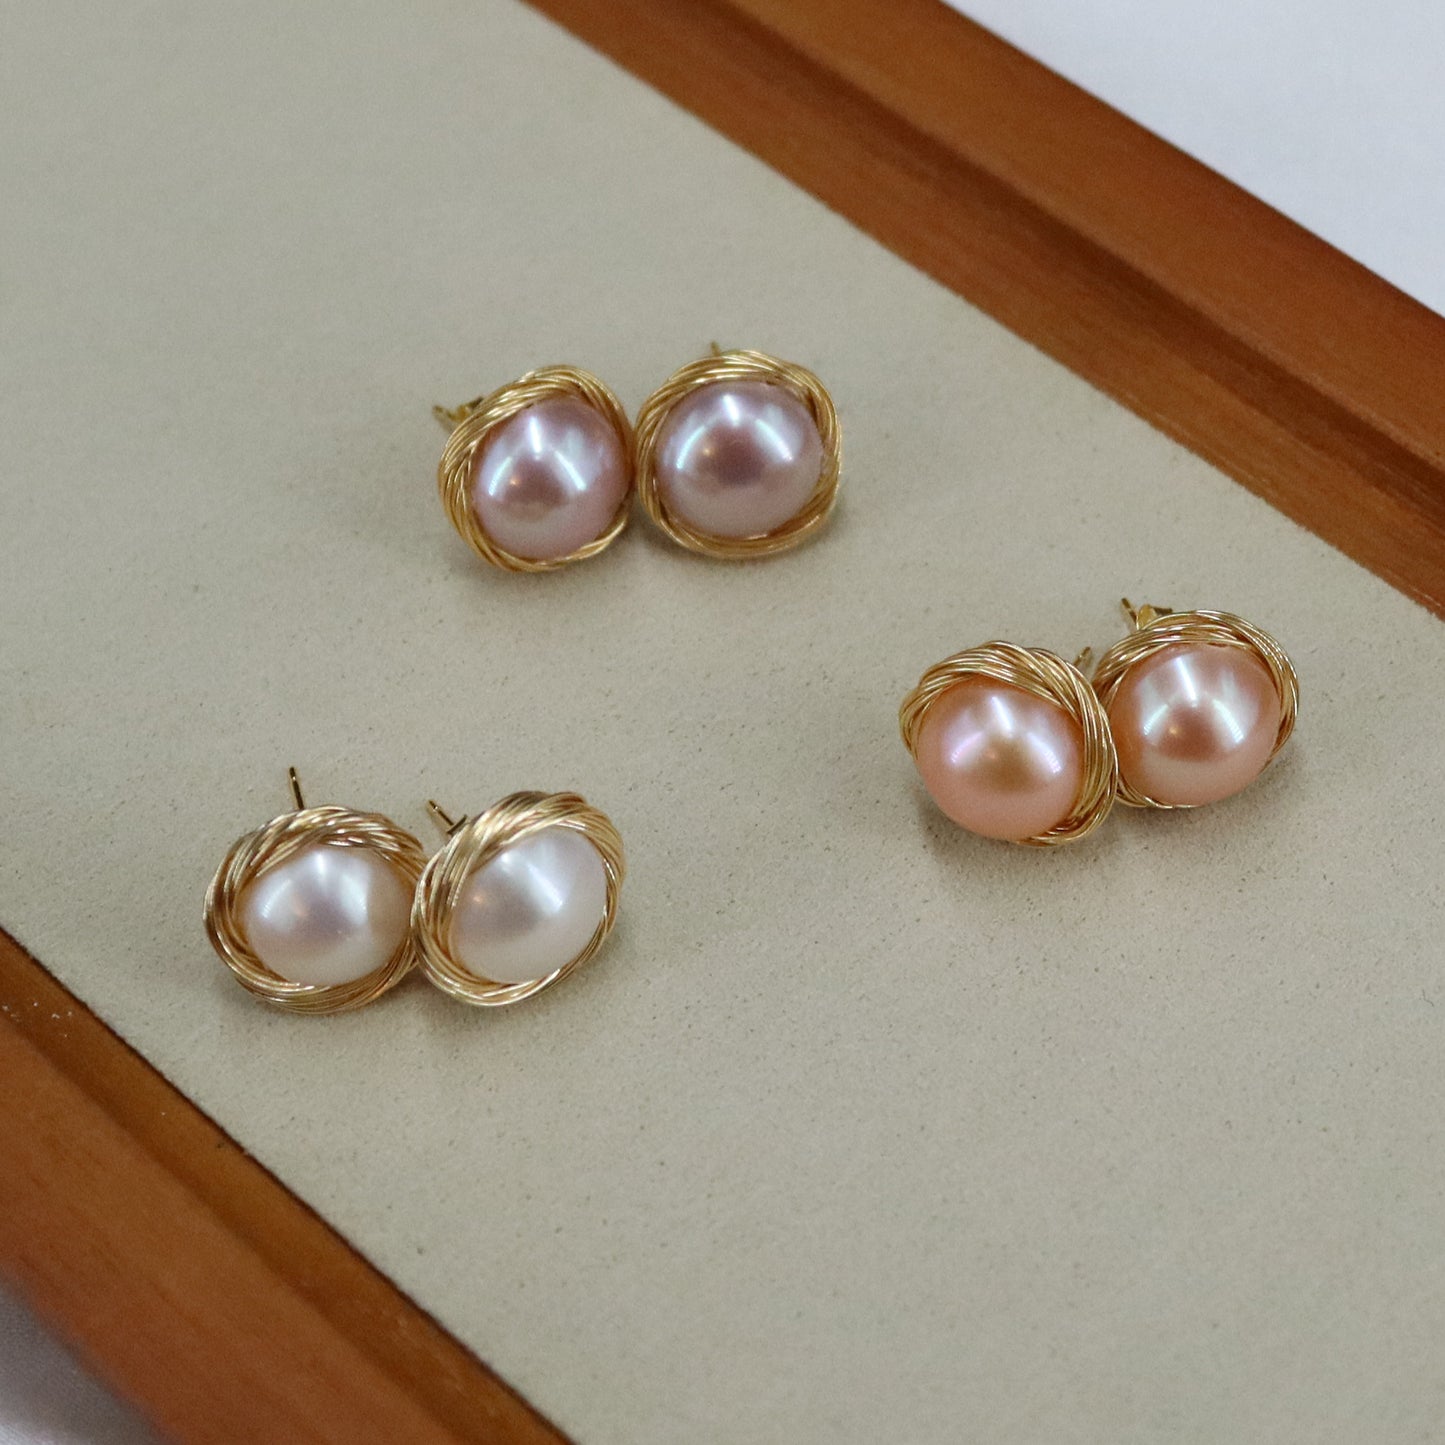 Genuine pearl stud earrings